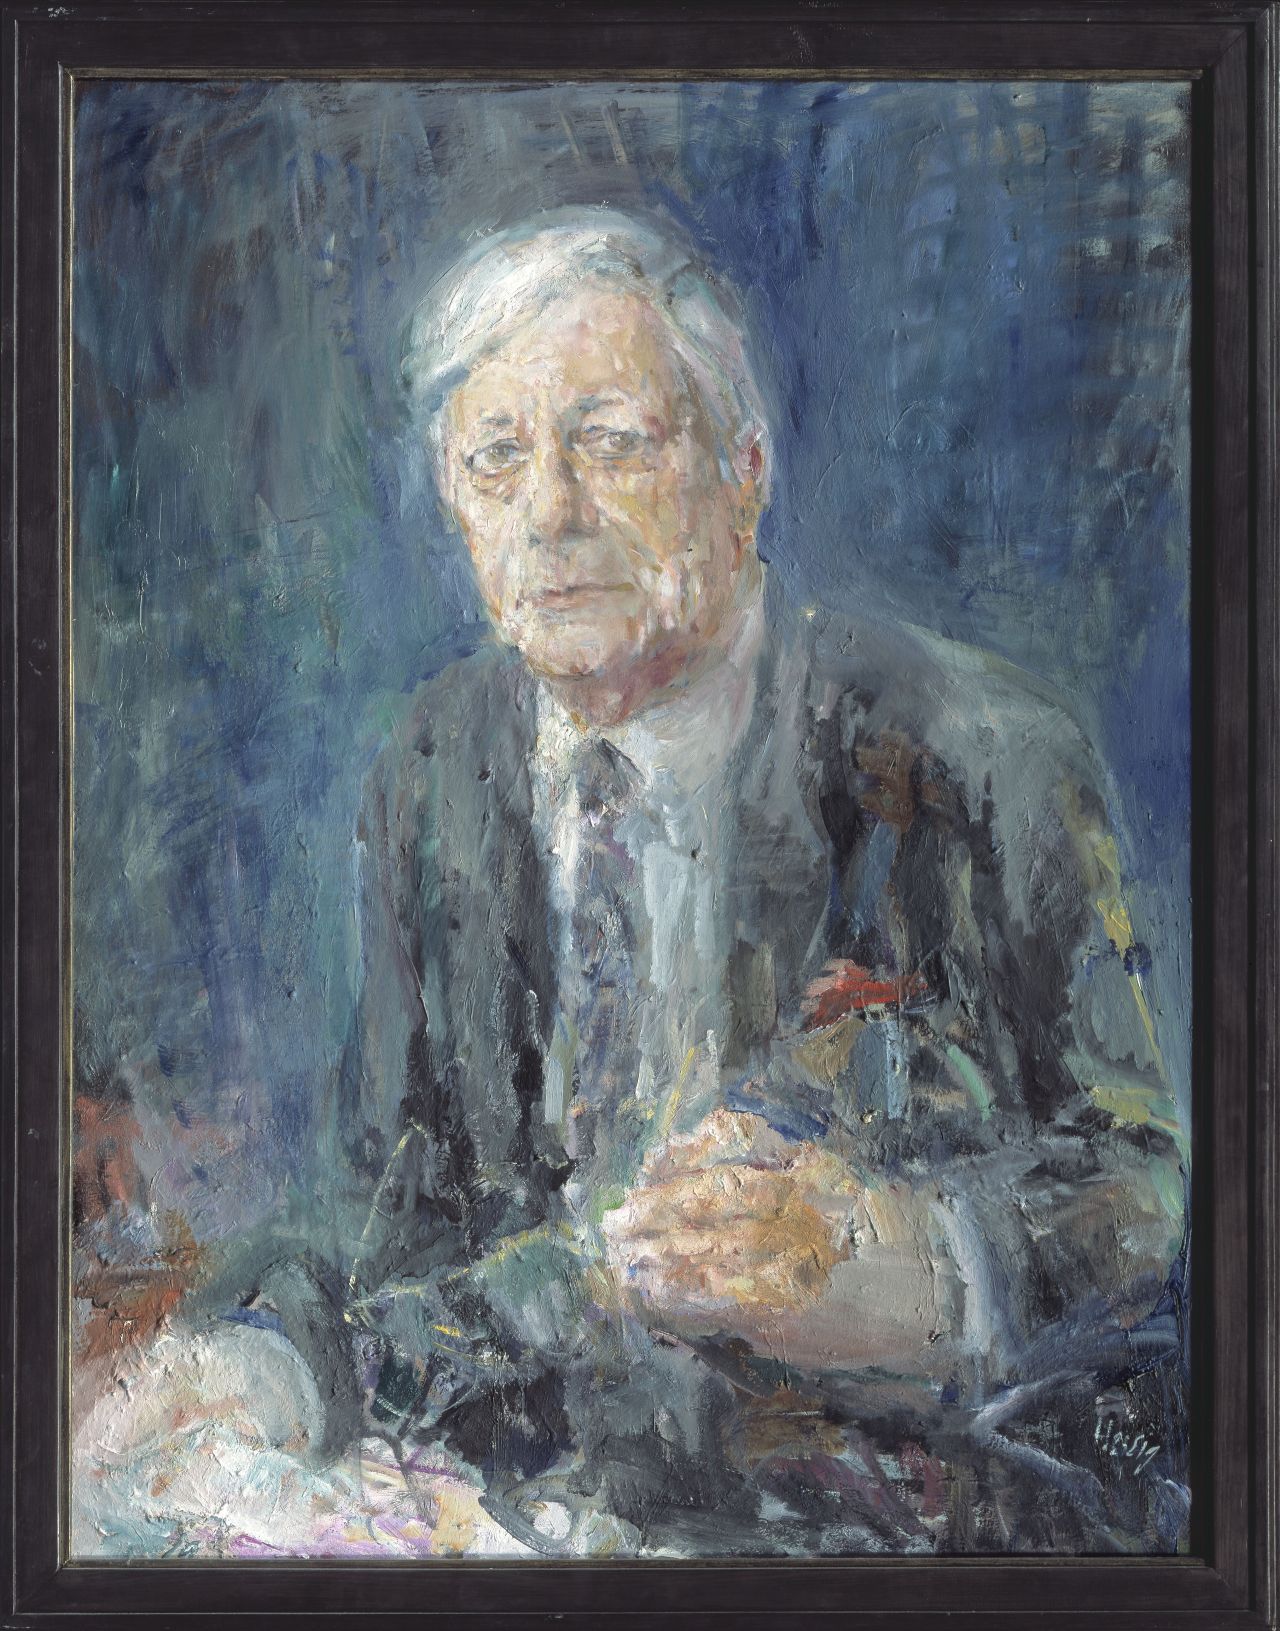 Offizielles Porträtbild von Bundeskanzler Helmut Schmidt, gemalt von dem DDR-Künstler Bernhard Heisig, 1986/88. 